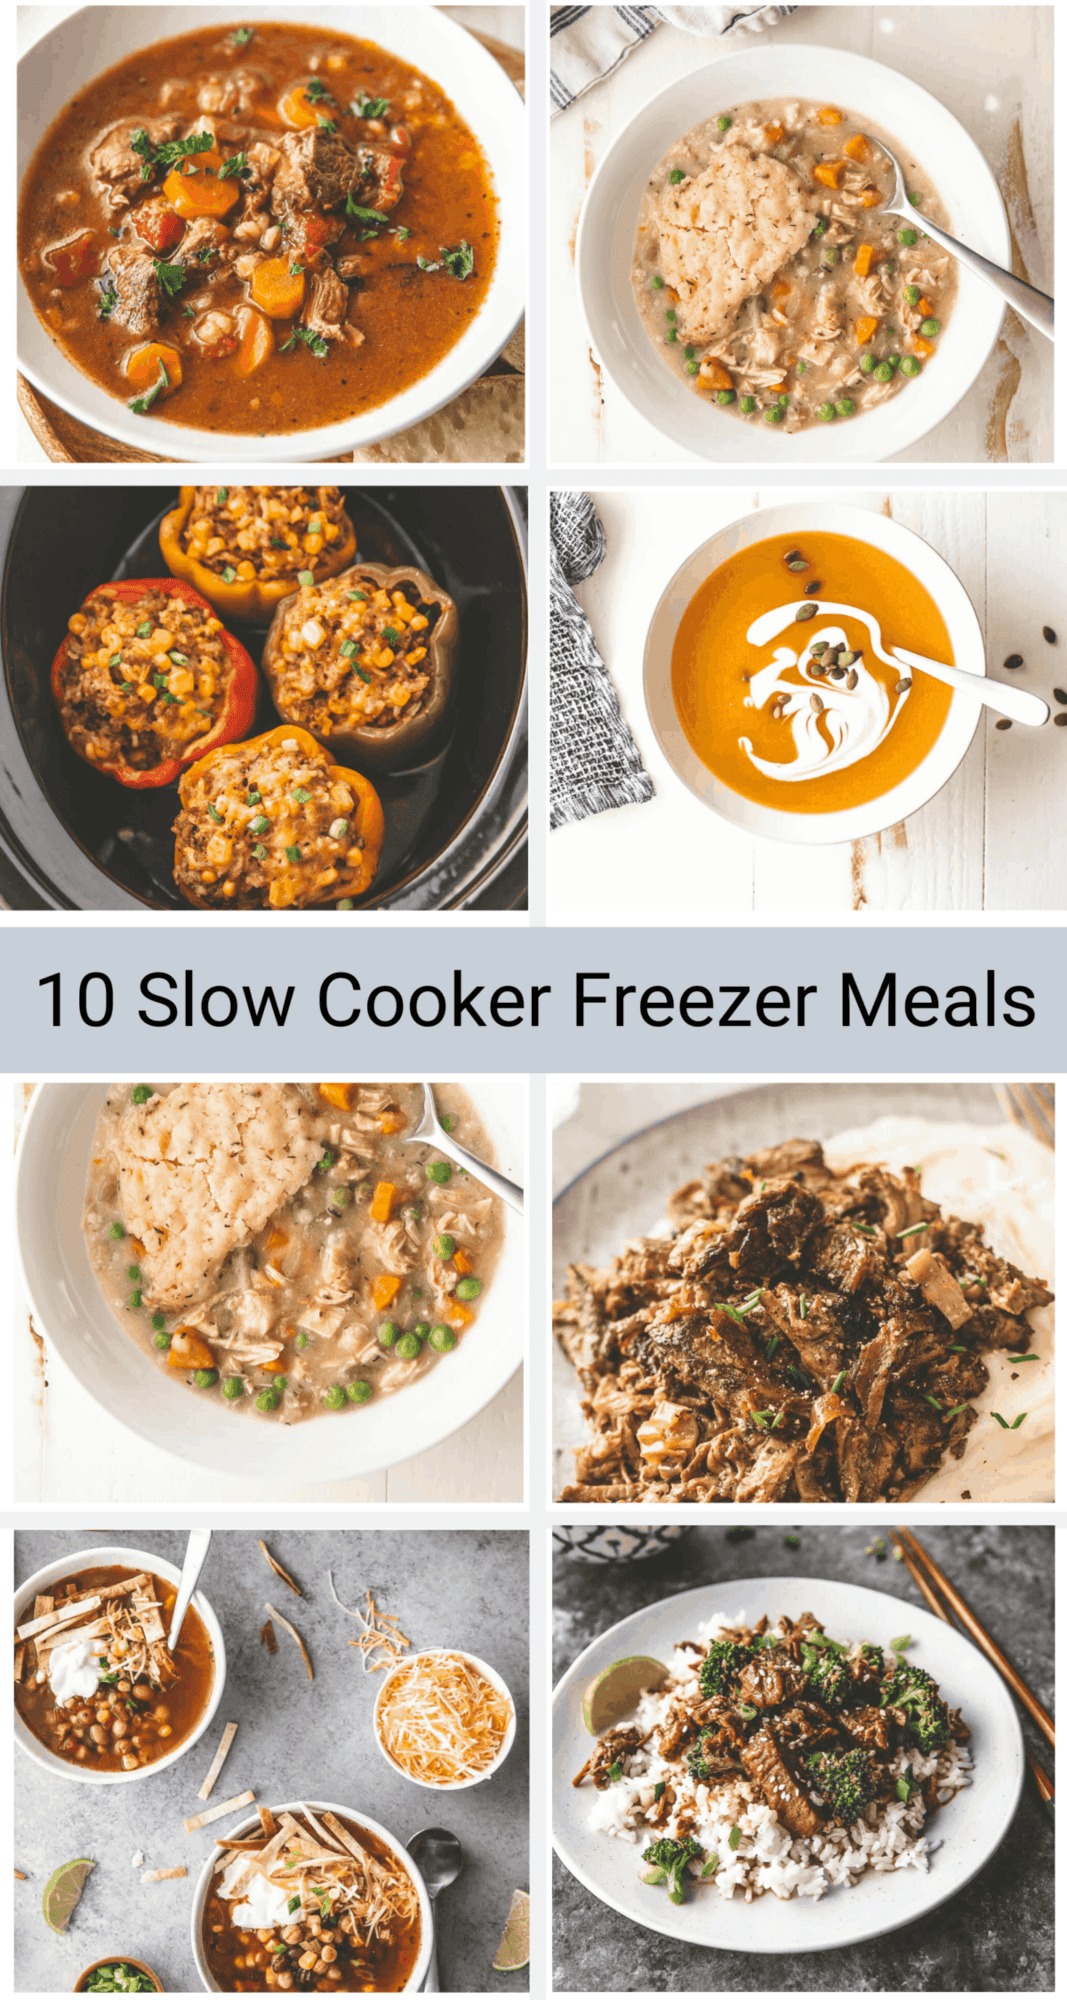 10 slow cooker freezer meals